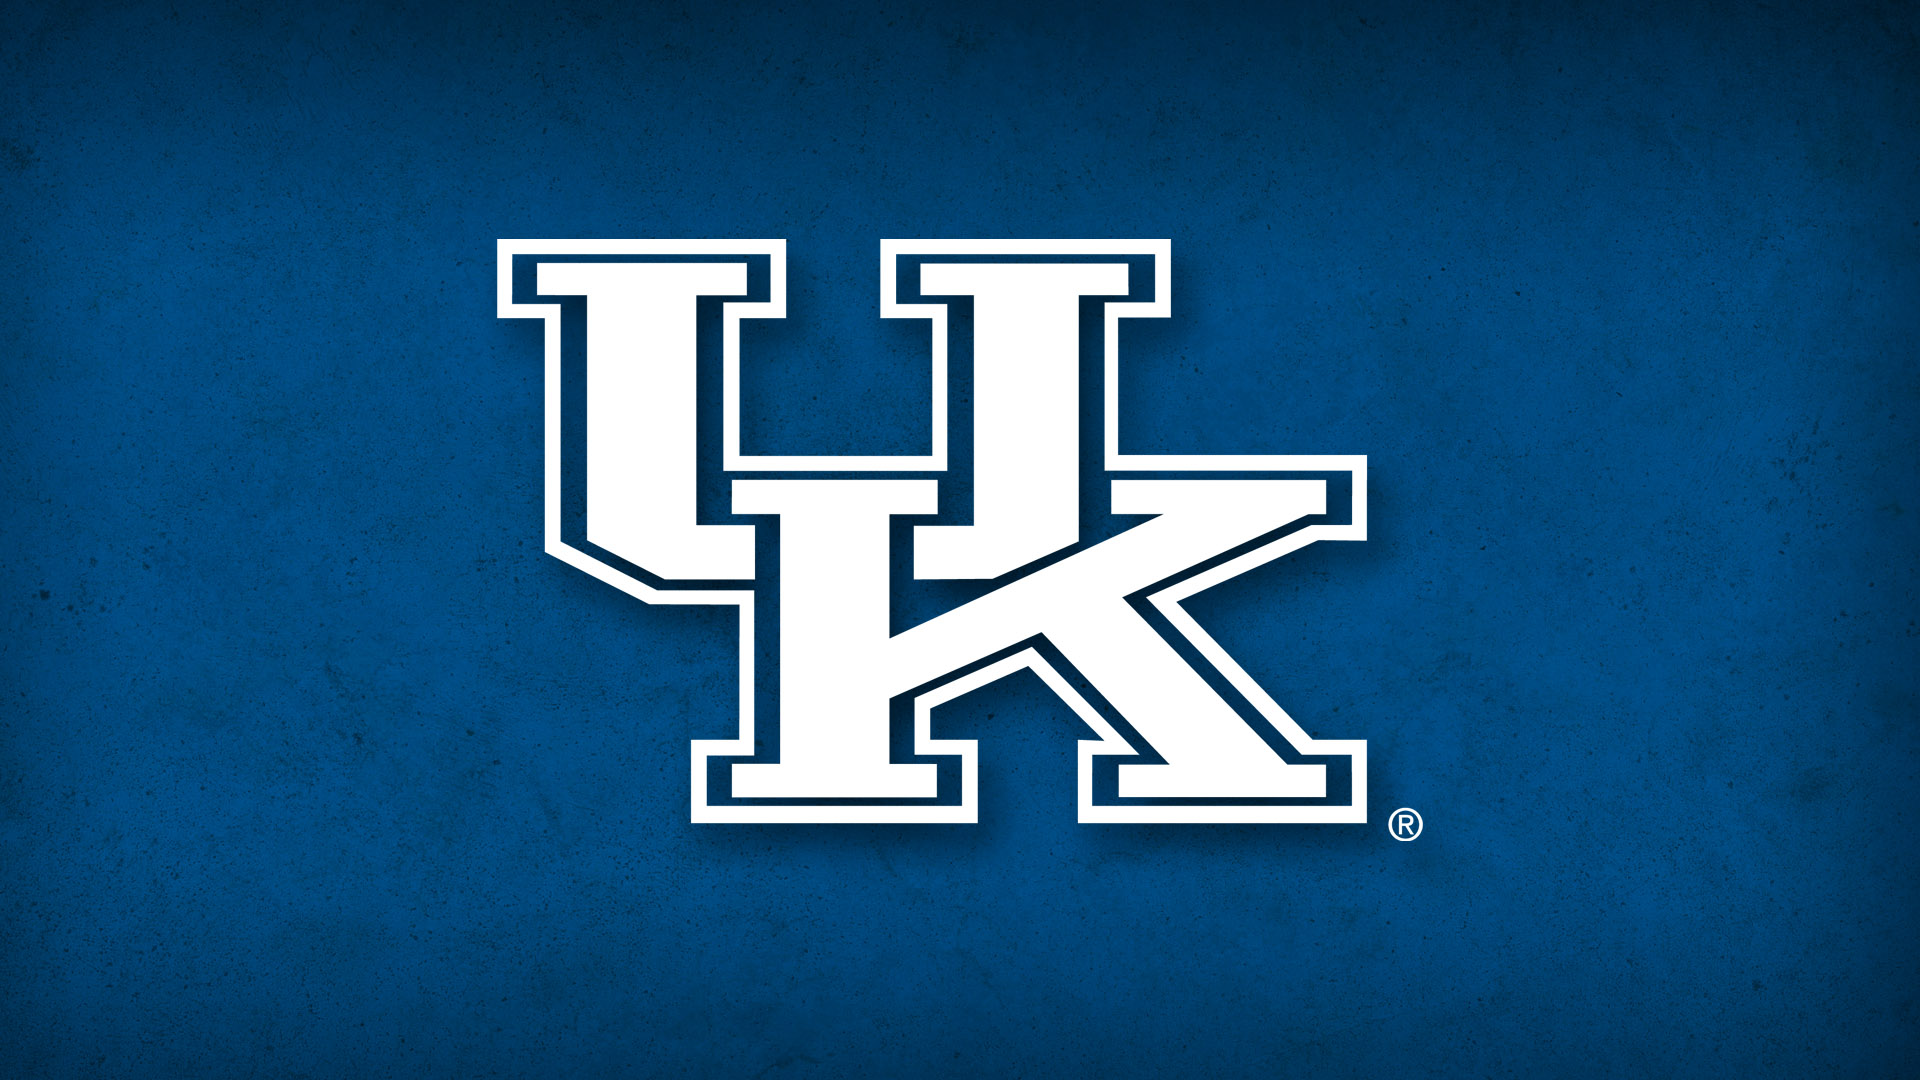 Best Photos of UK Logo Kentucky - Kentucky Wildcats Basketball ...